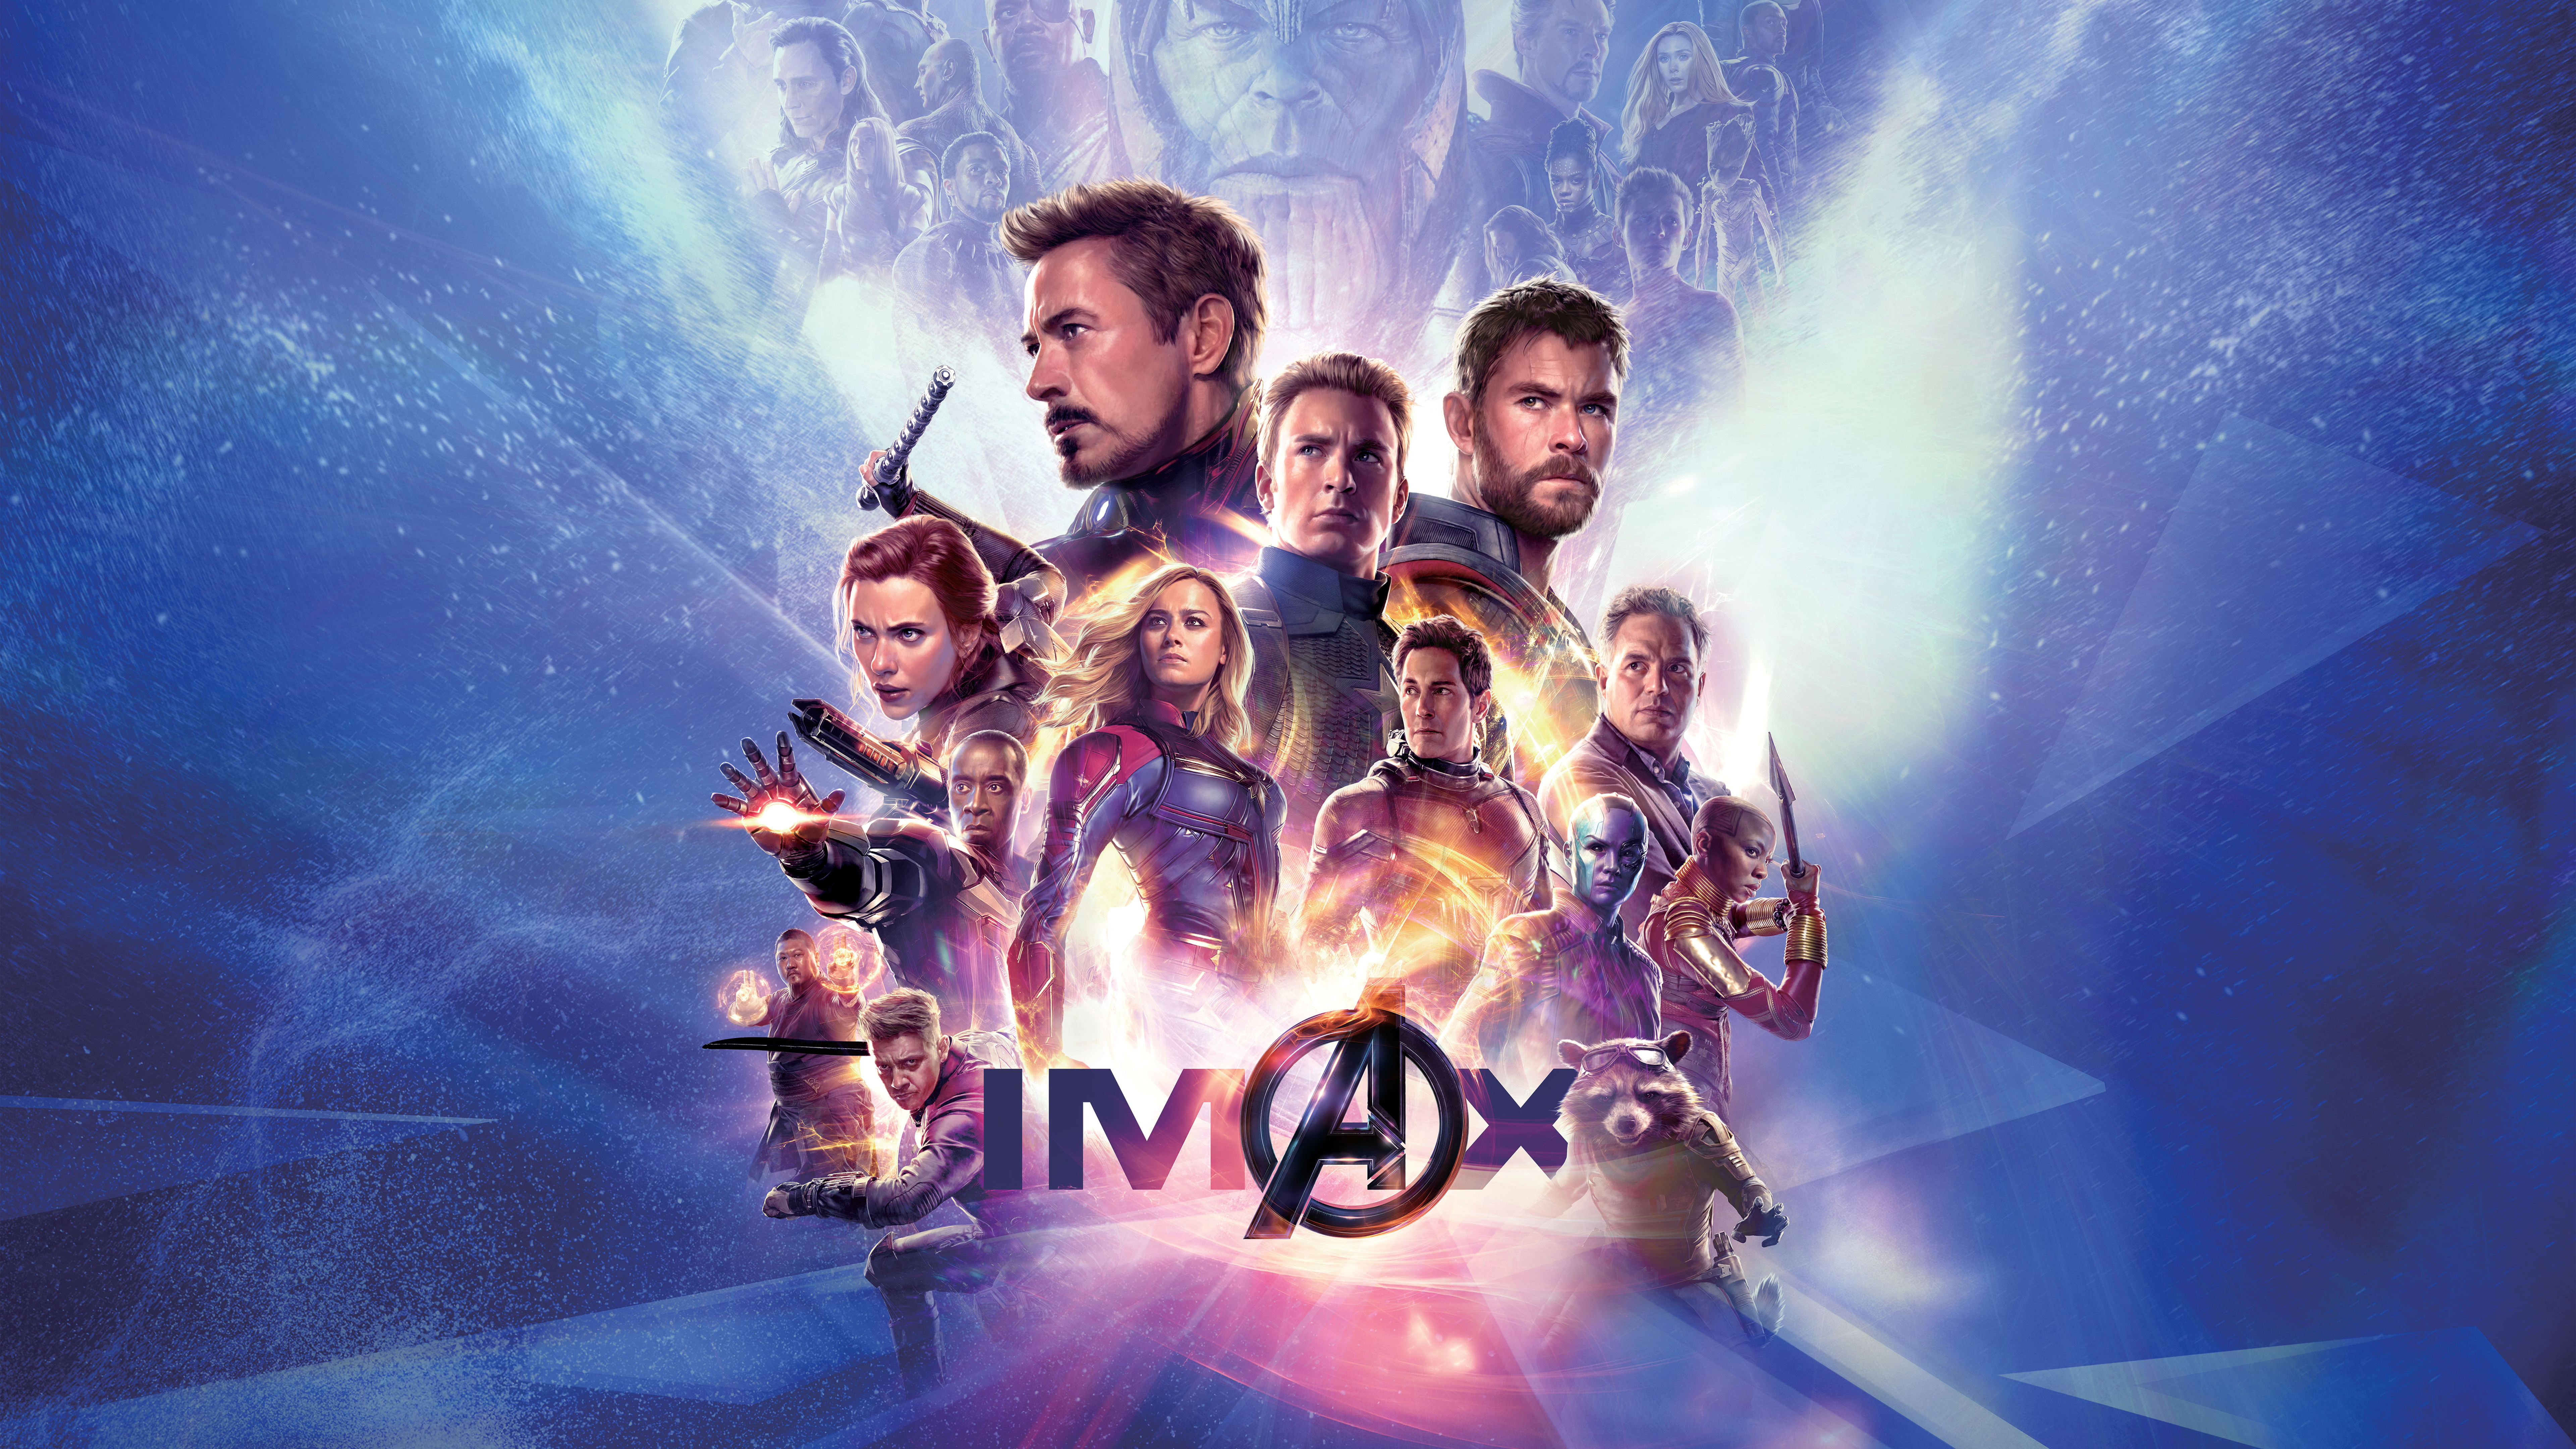 Avengers Endgame IMAX Poster 4K 8K Wallpapers